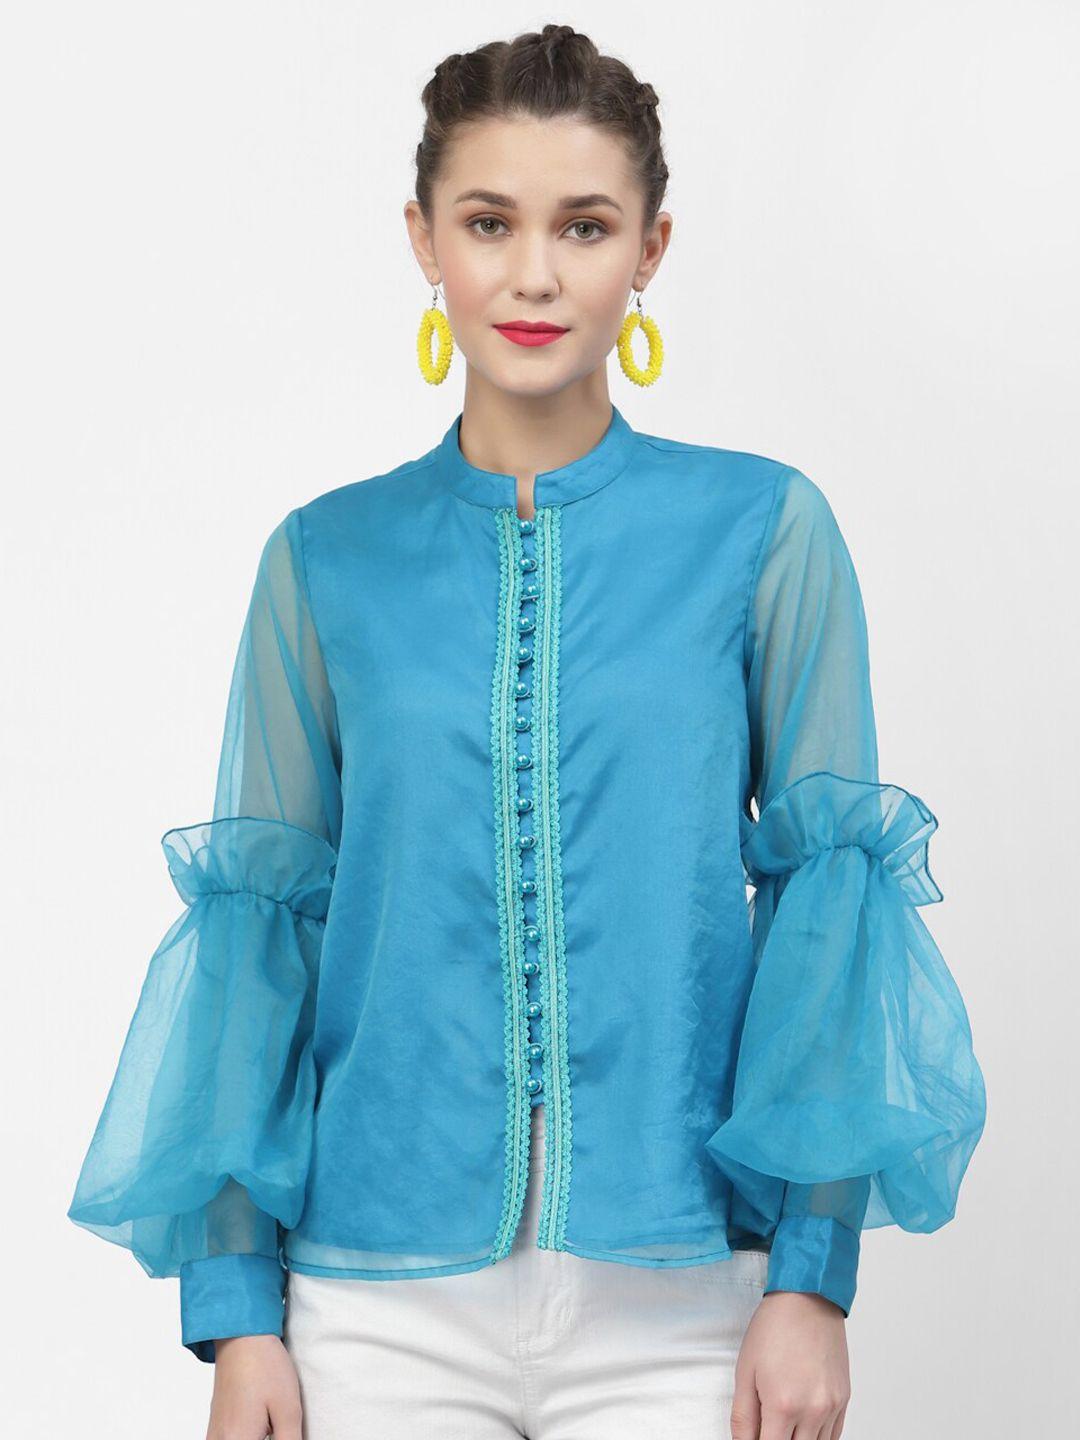 lela turquoise blue mandarin collar bishop sleeves shirt style top